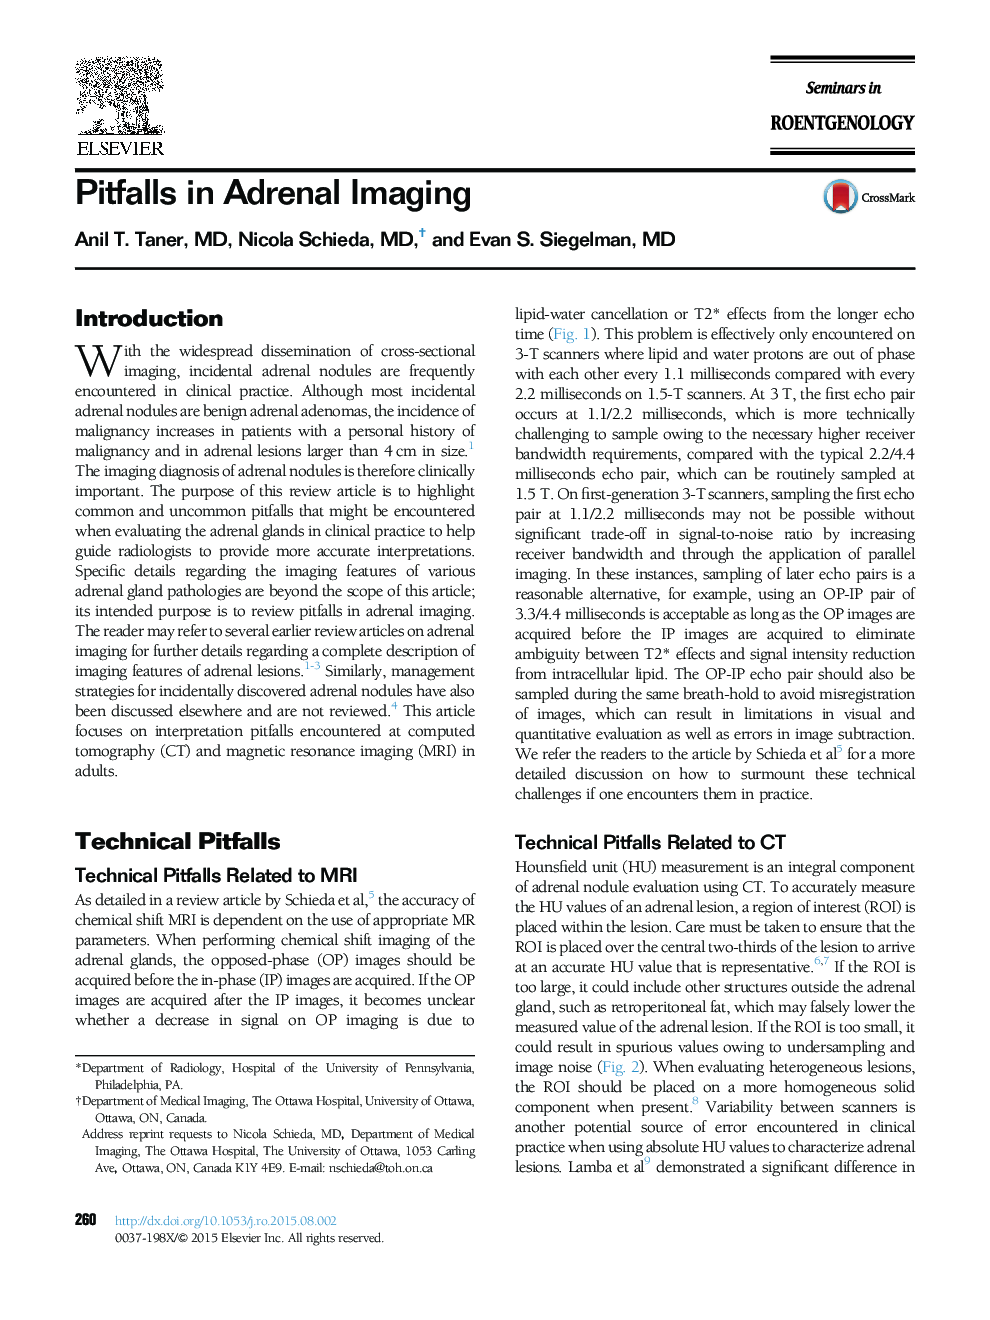 Pitfalls in Adrenal Imaging